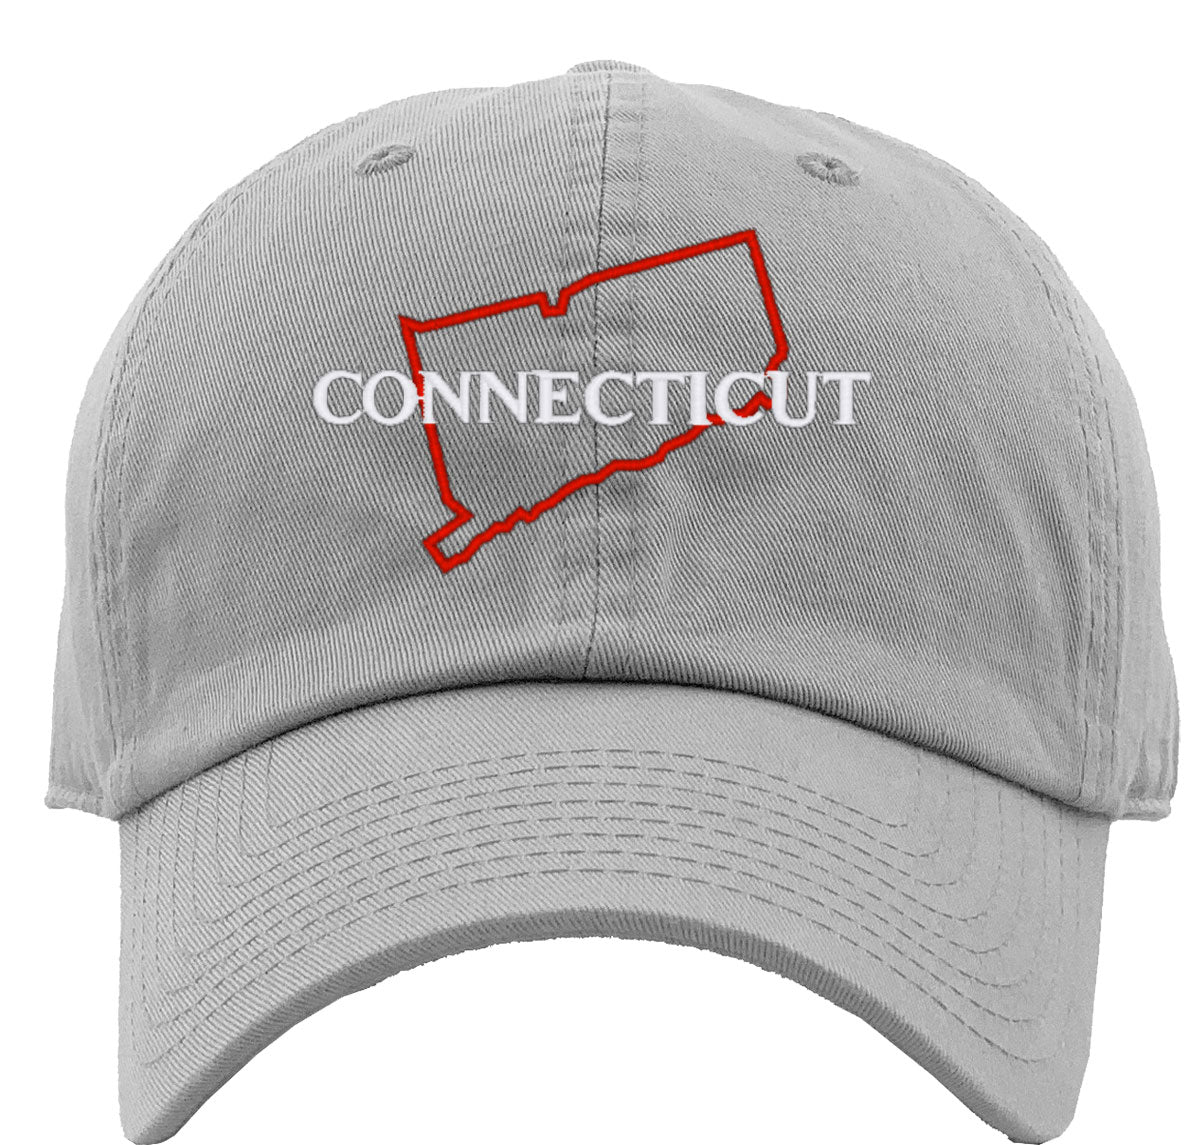 Connecticut Premium Baseball Cap